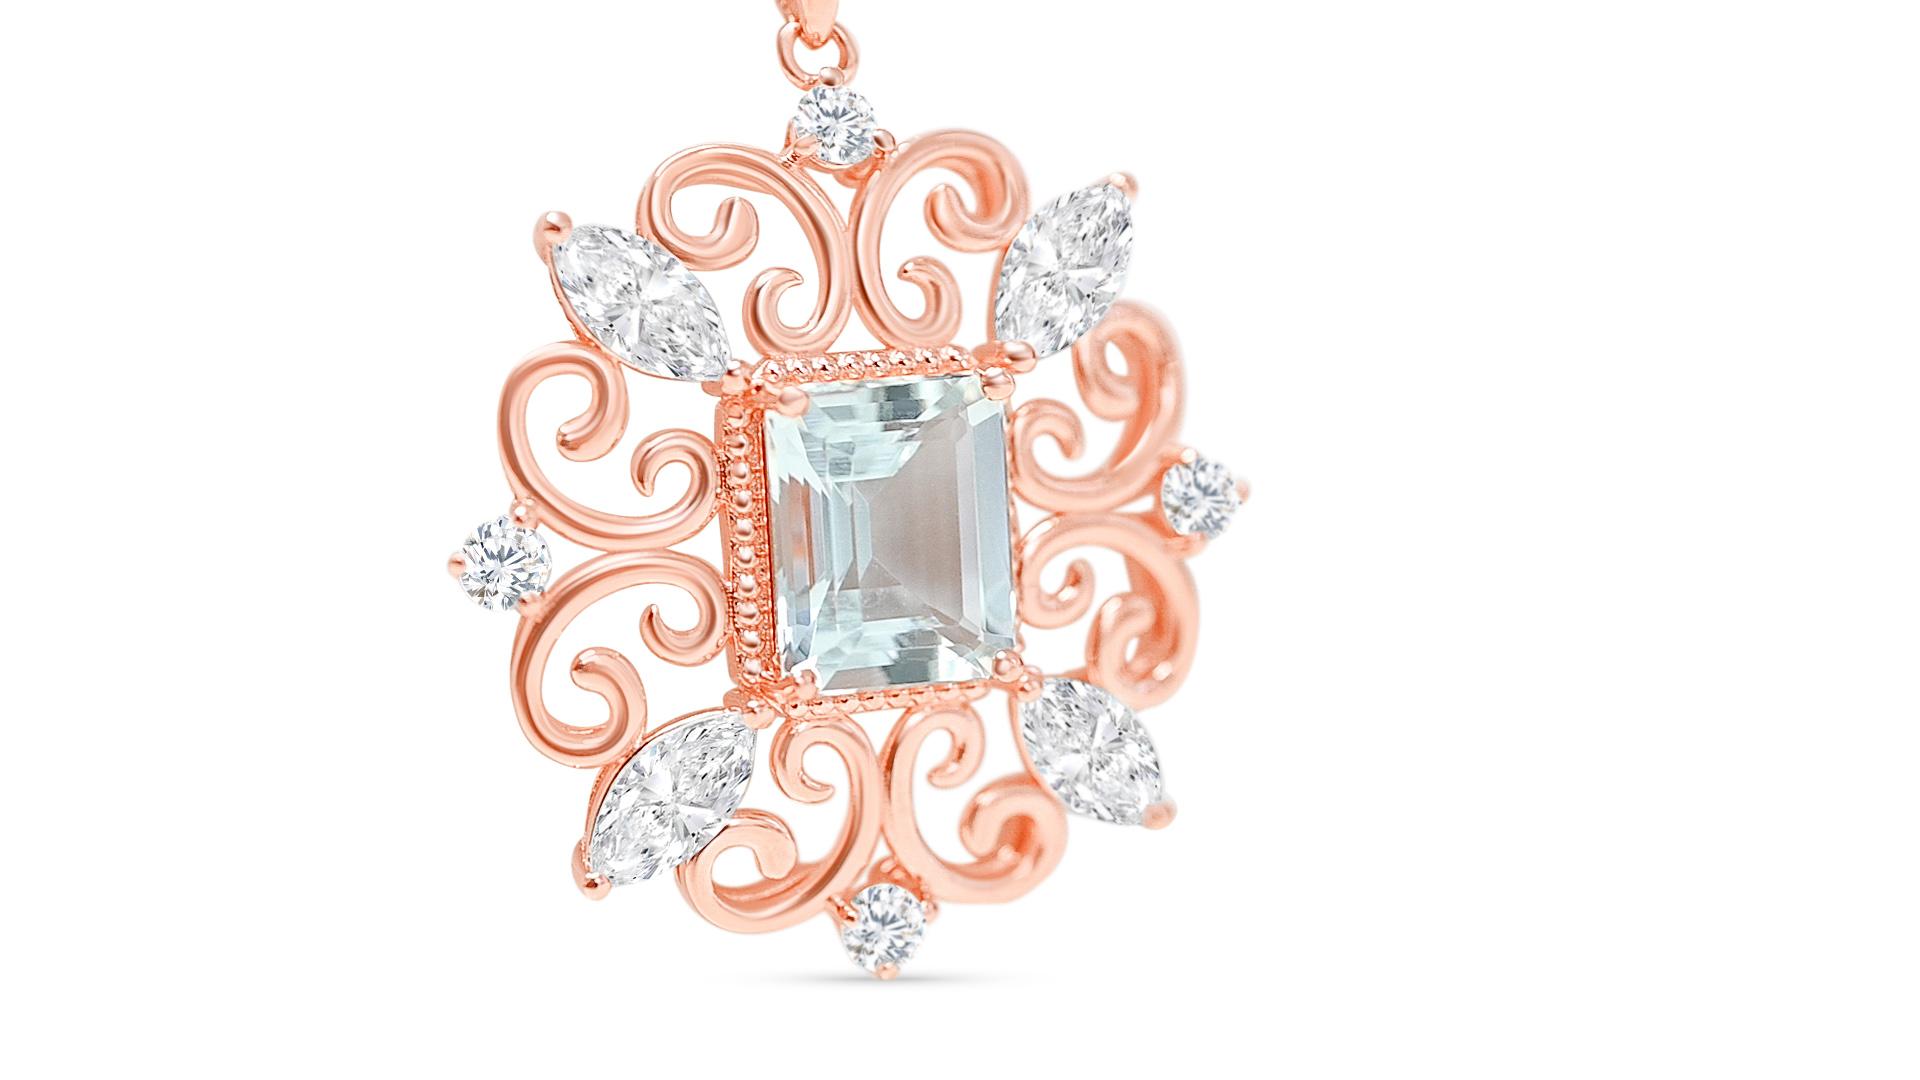 Bienvenue à Blue Star Gems NY LLC ! Découvrez les colliers de fiançailles et les colliers de mariage les plus populaires. Tous les modèles vont du classique à l'inspiration vintage. Nous proposons des bijoux joyeux à porter au quotidien. Juste pour